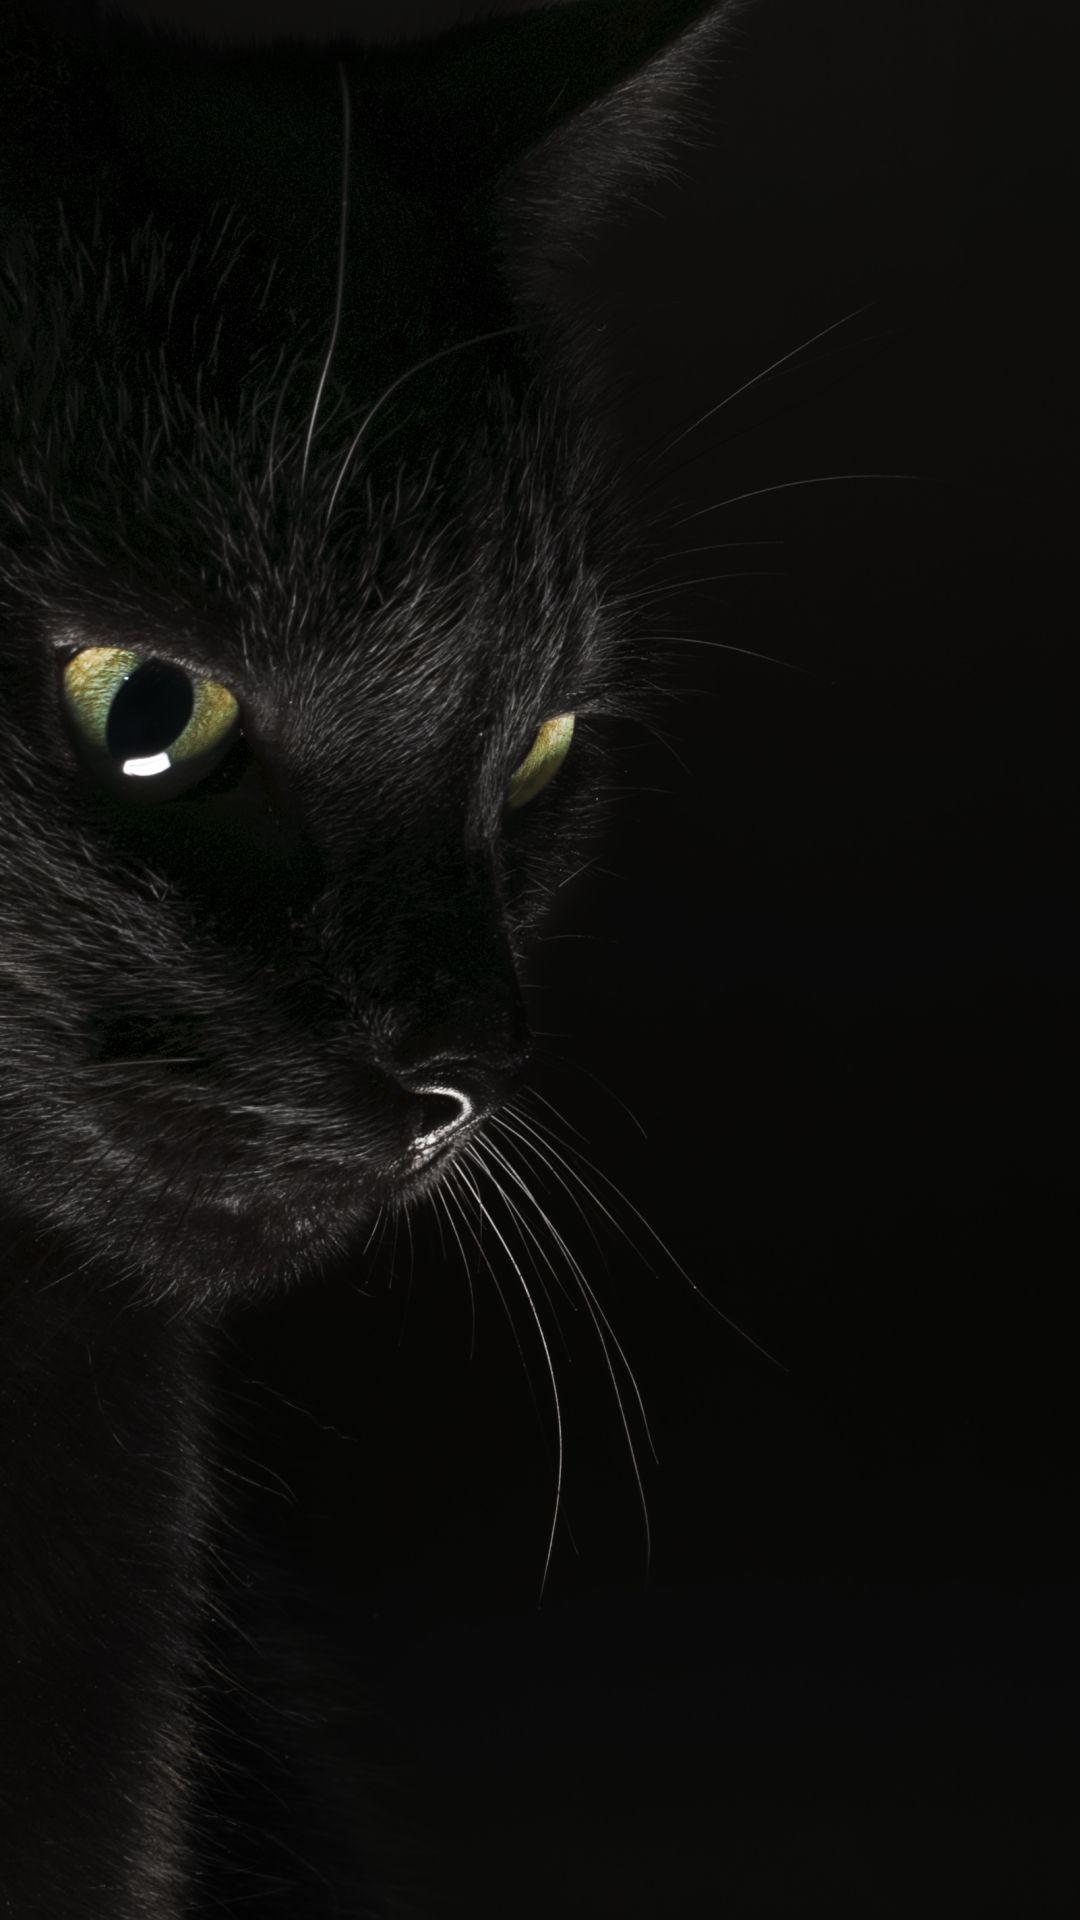 35 Gambar Wallpaper Black Cat Mobile terbaru 2020